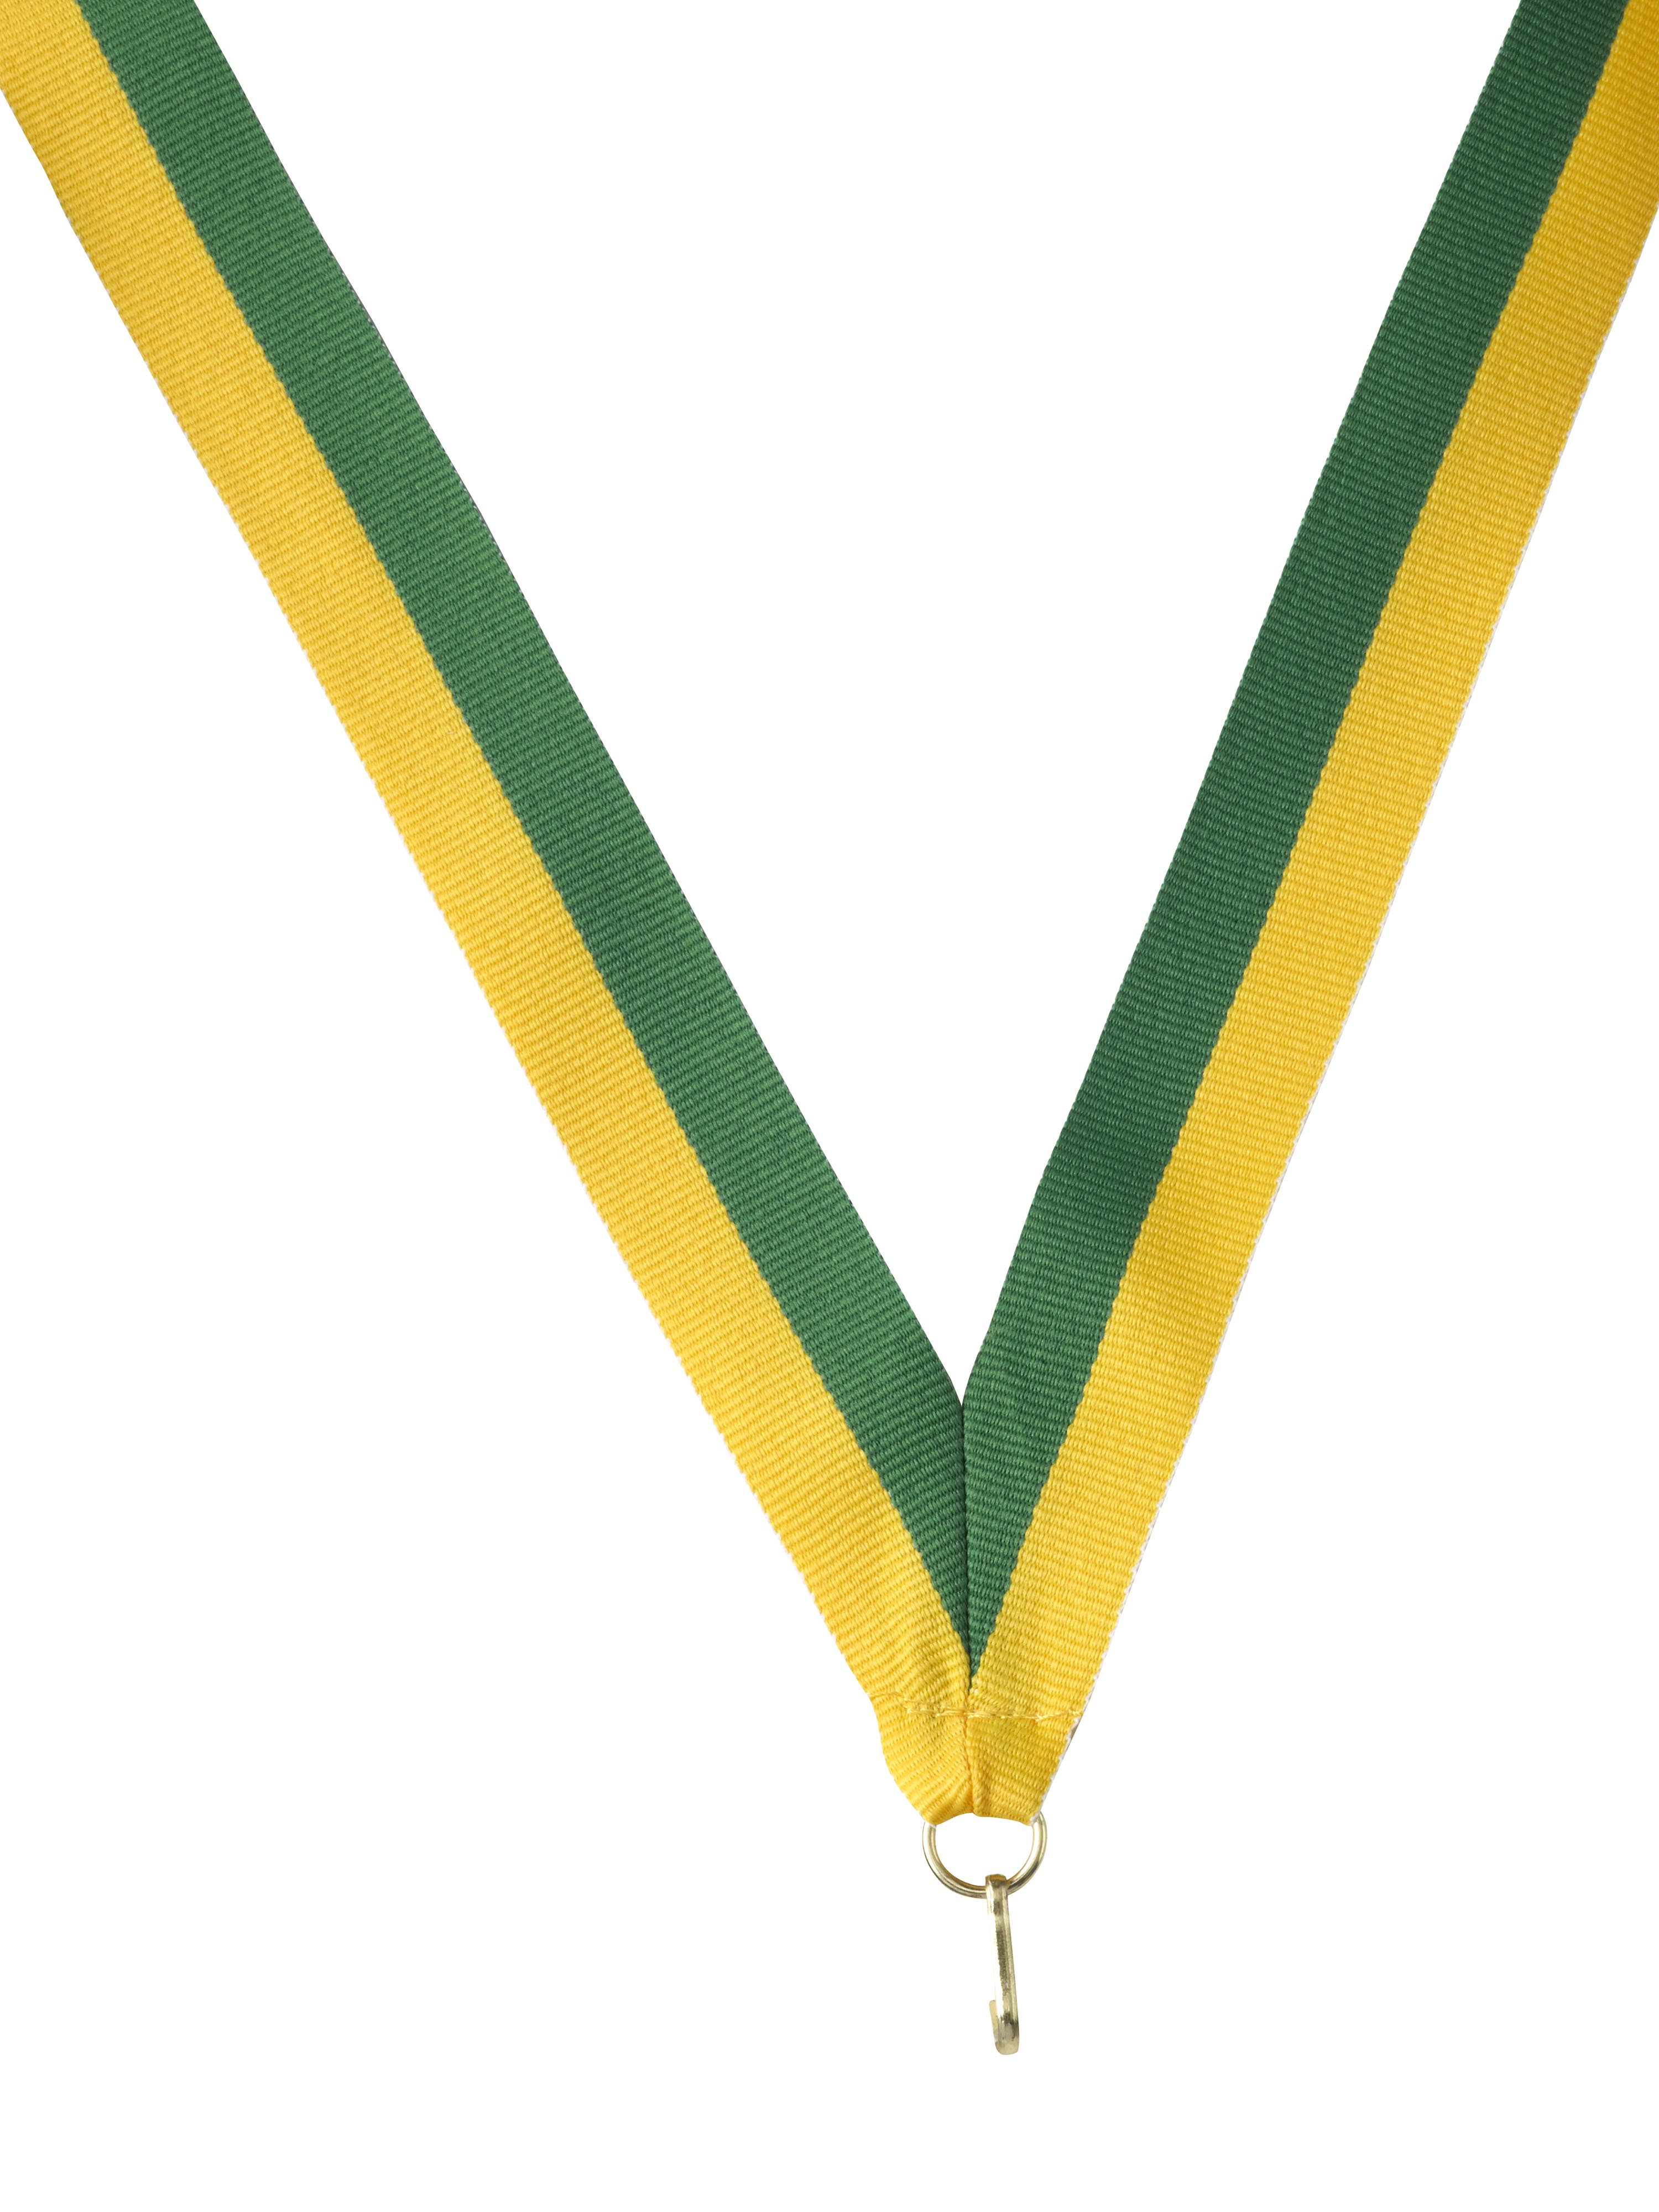 Medaillenband grün-gelb